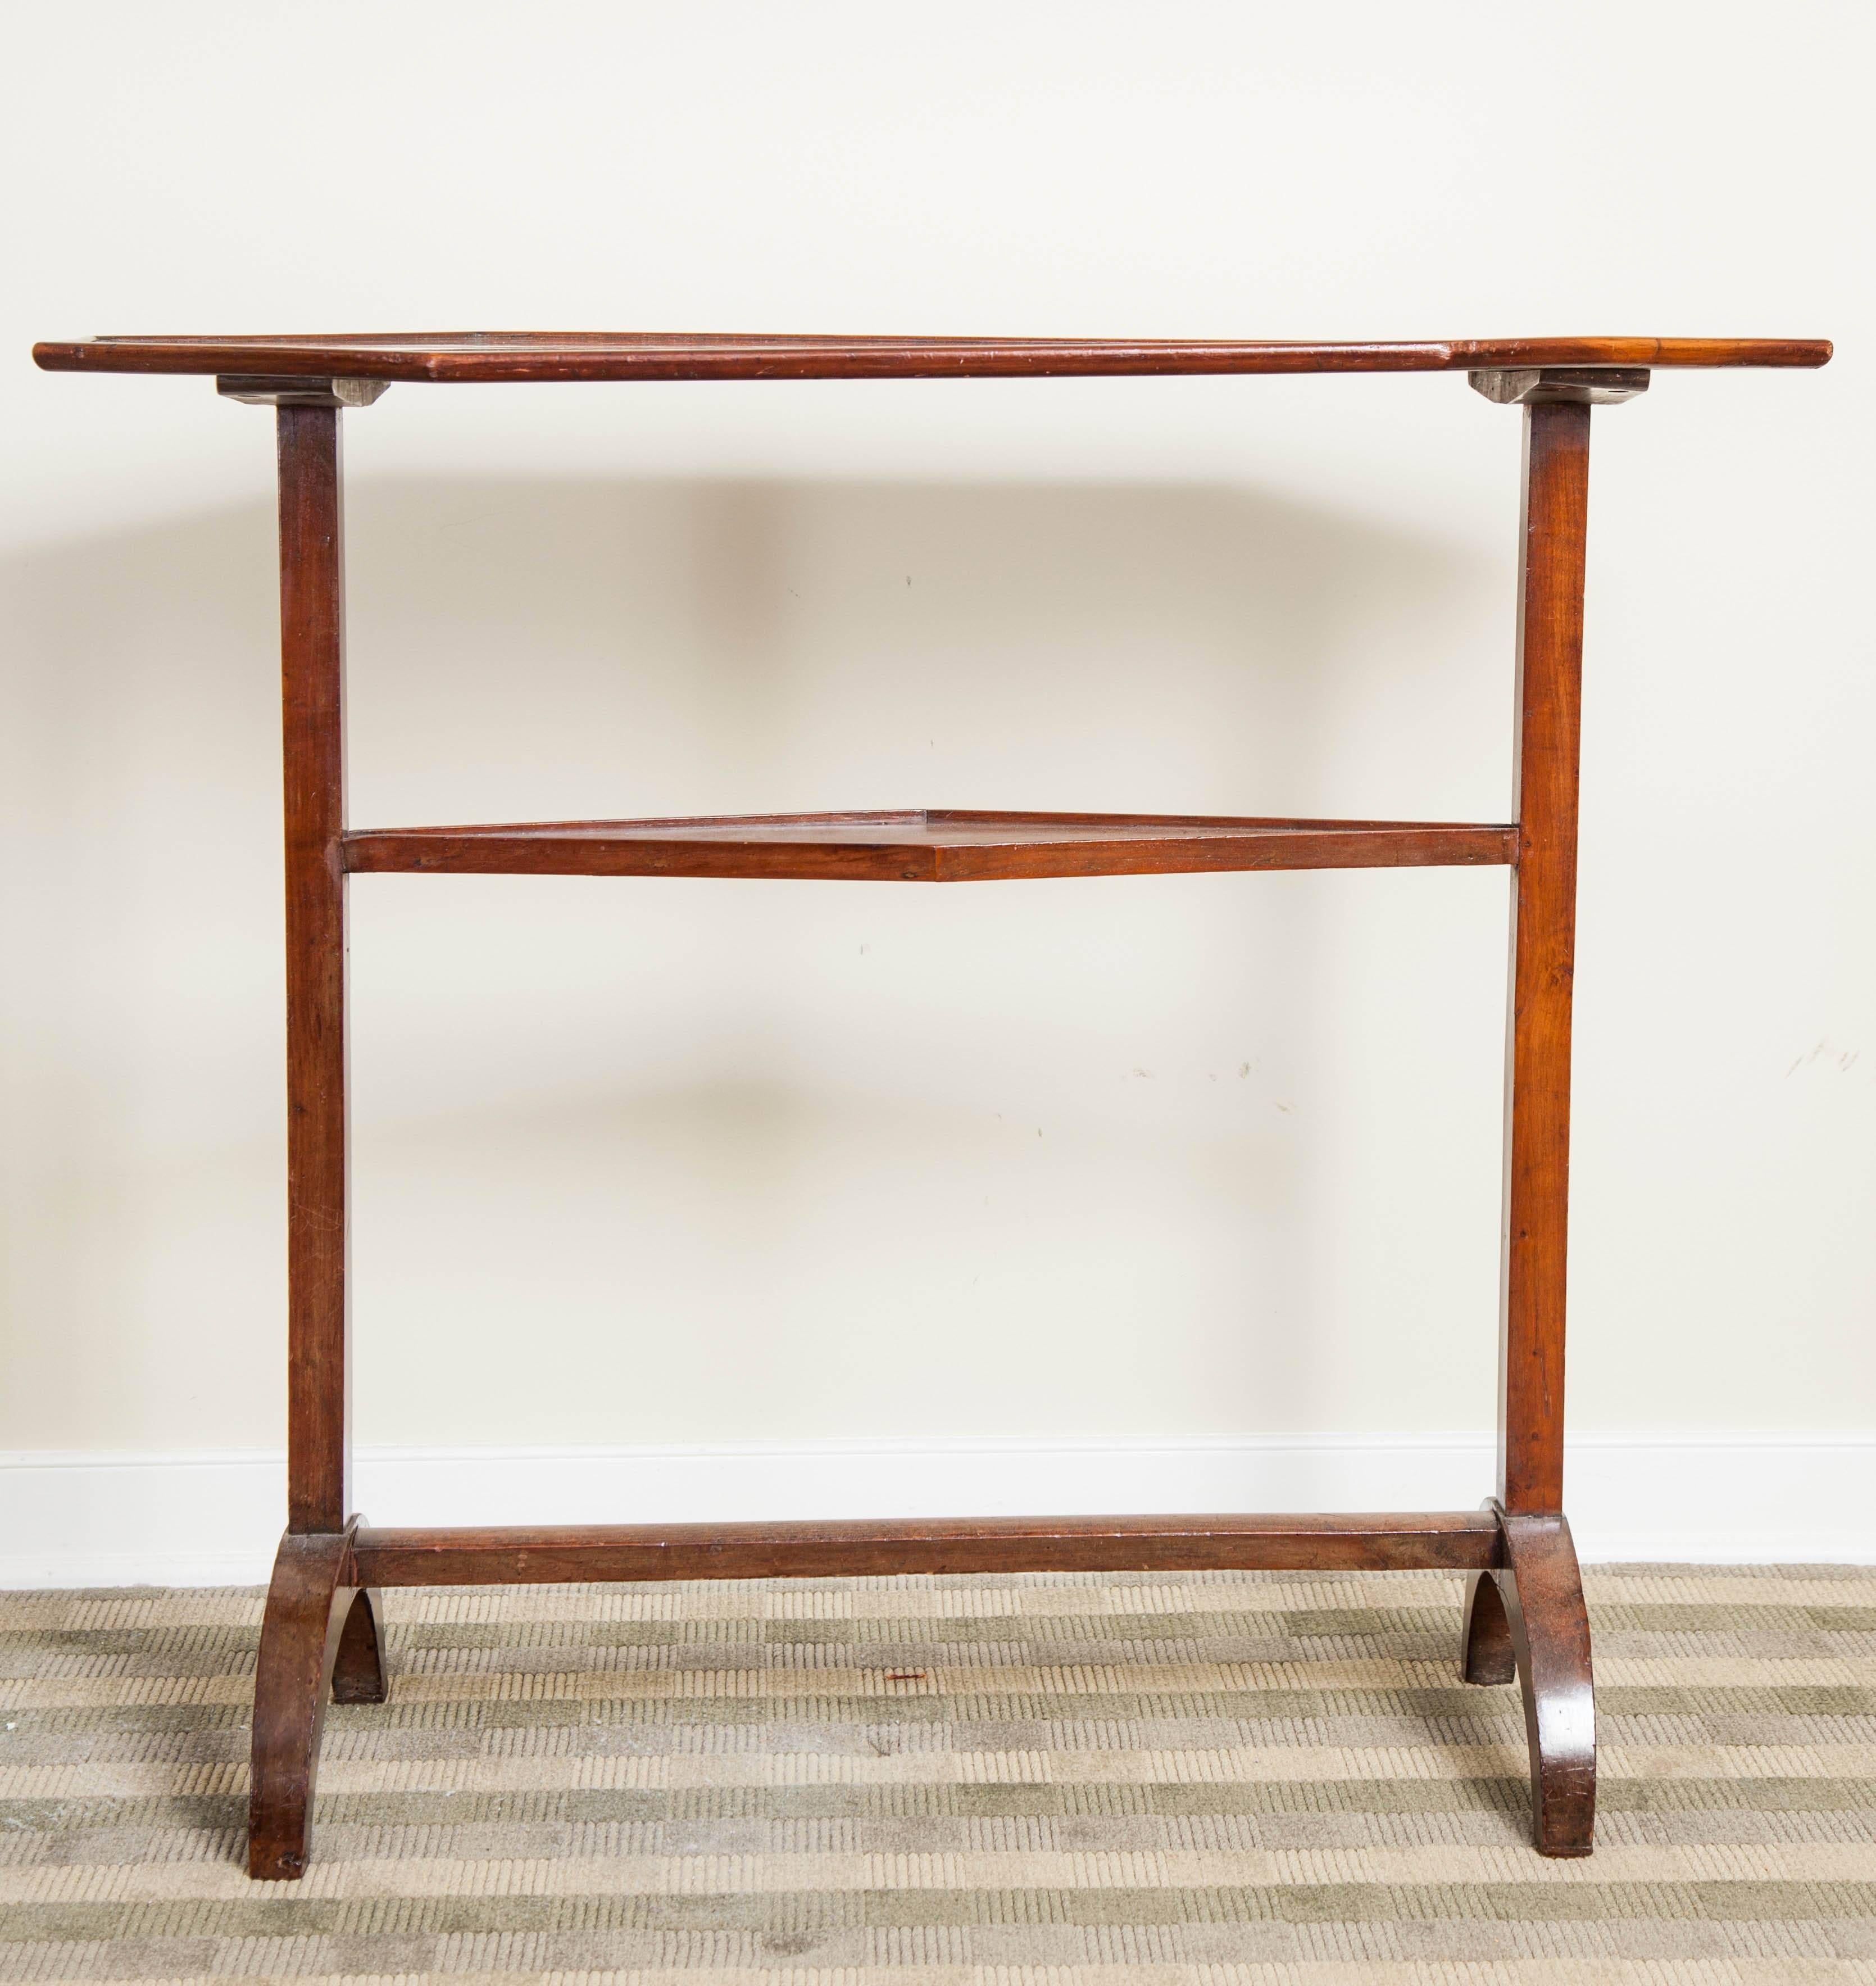 Directoire Tisch aus Mahagoni, frühes 19. Jahrhundert. Ein Tisch mit achteckiger Platte und unterem Regal.